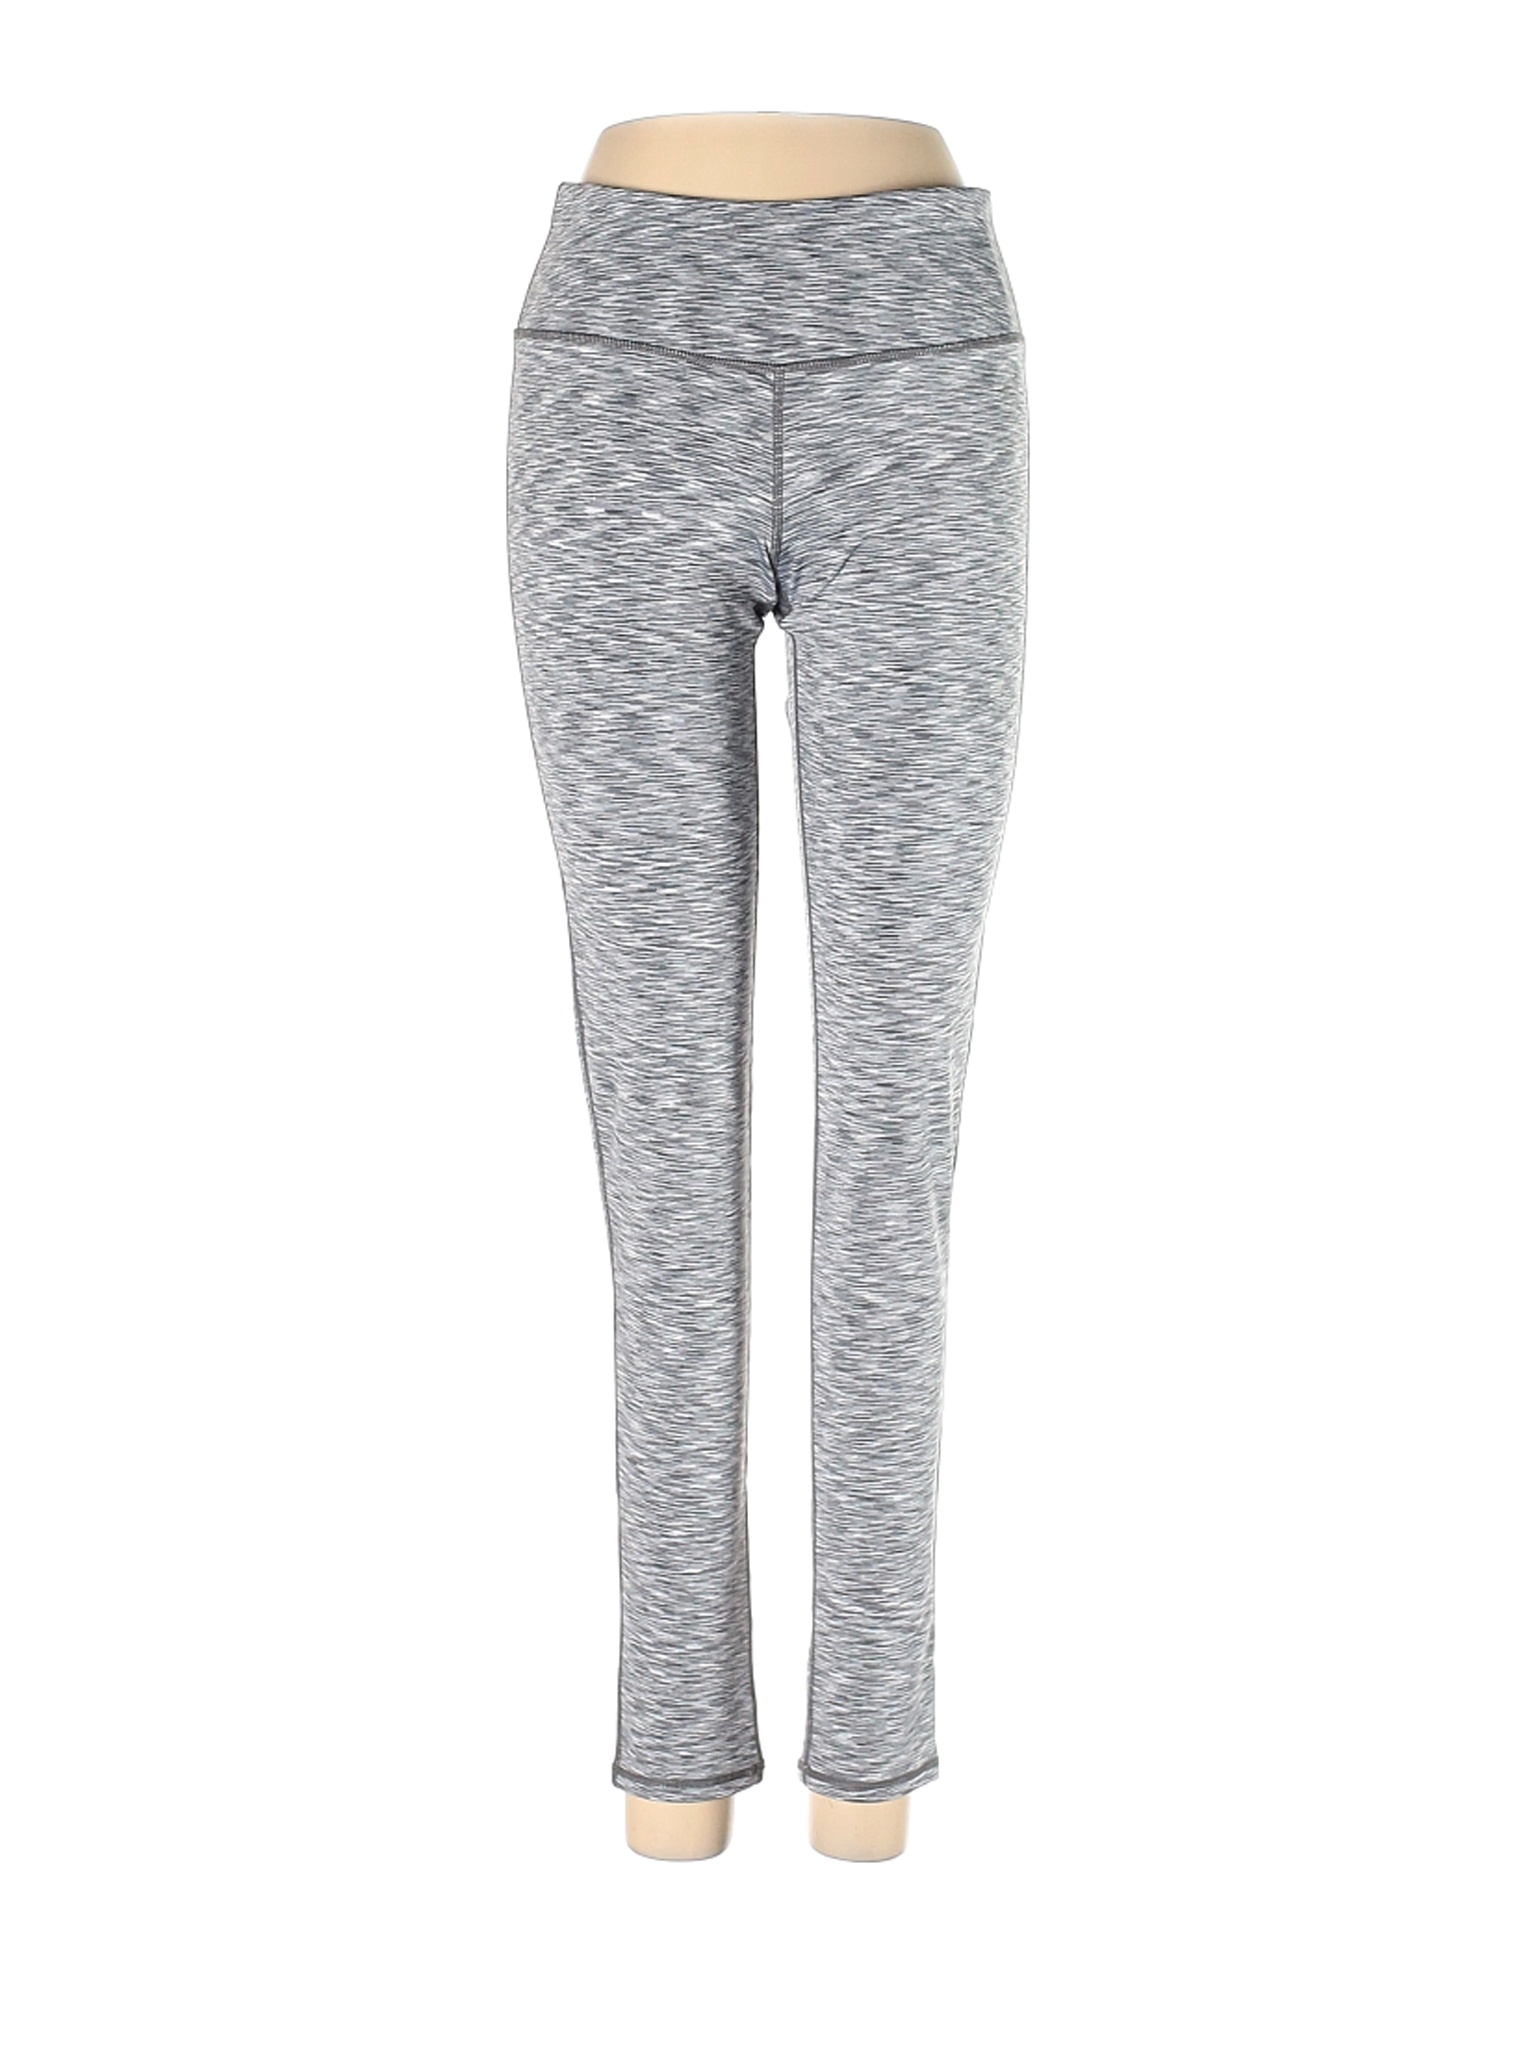 Oalka Women Gray Active Pants S | eBay